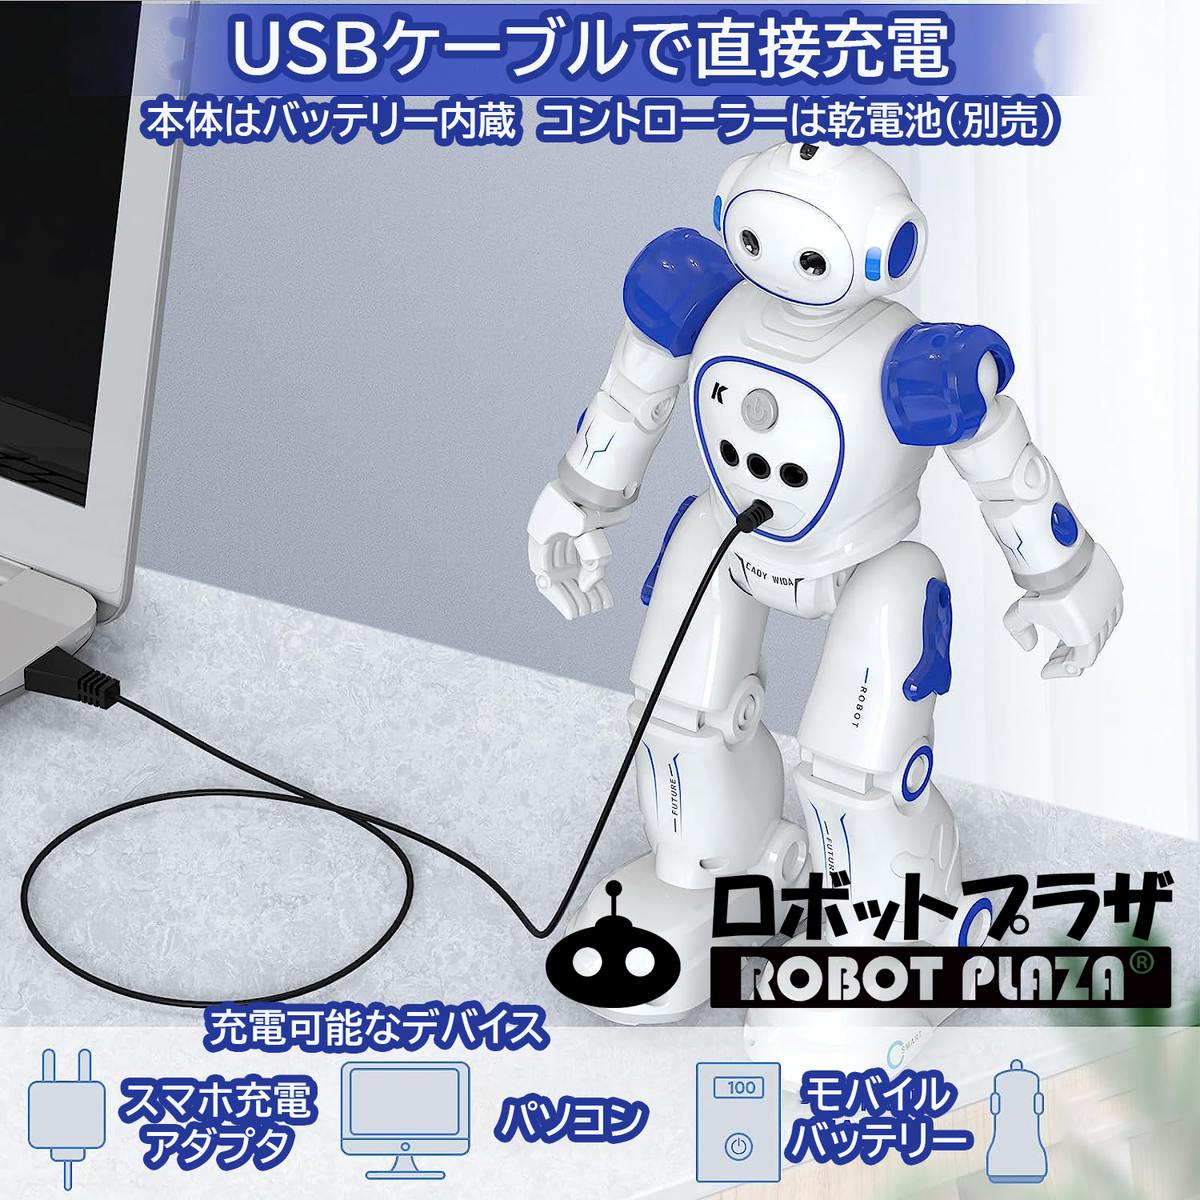 人型ロボットおもちゃ、USBケーブルで直接充電できて便利